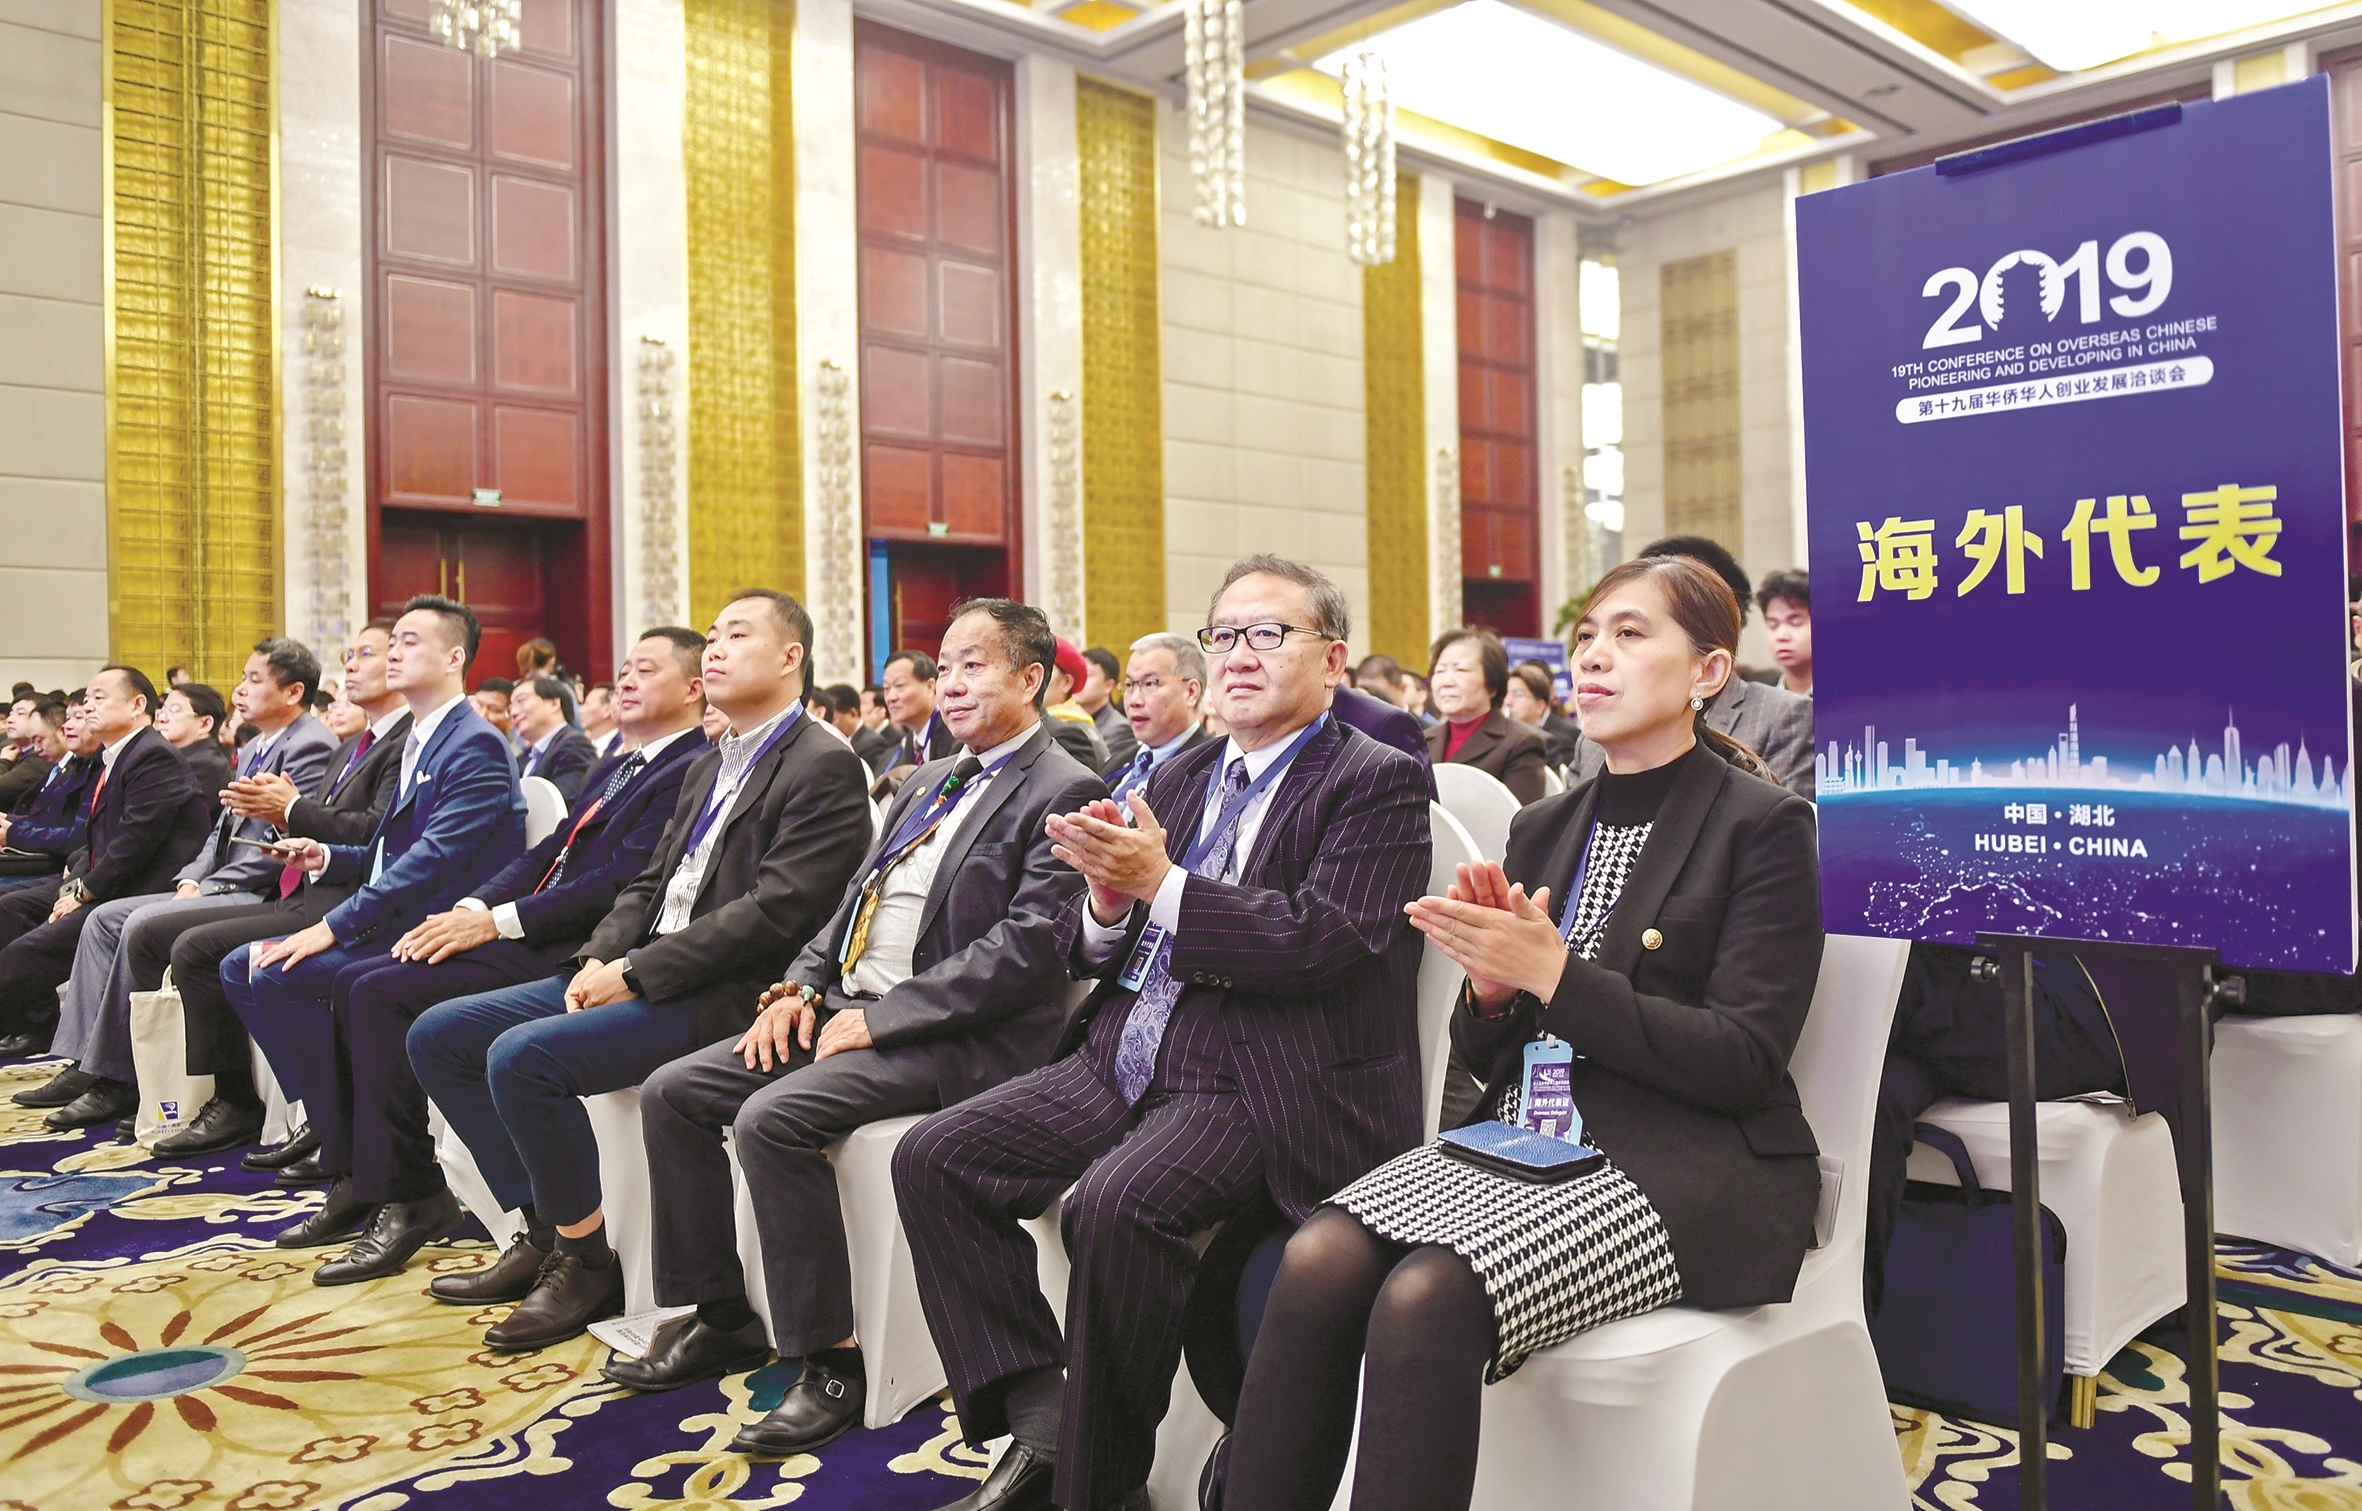 肉麻夫妇之第十九届华创会昨日在汉开幕 专家学者对武汉的发展信心满满